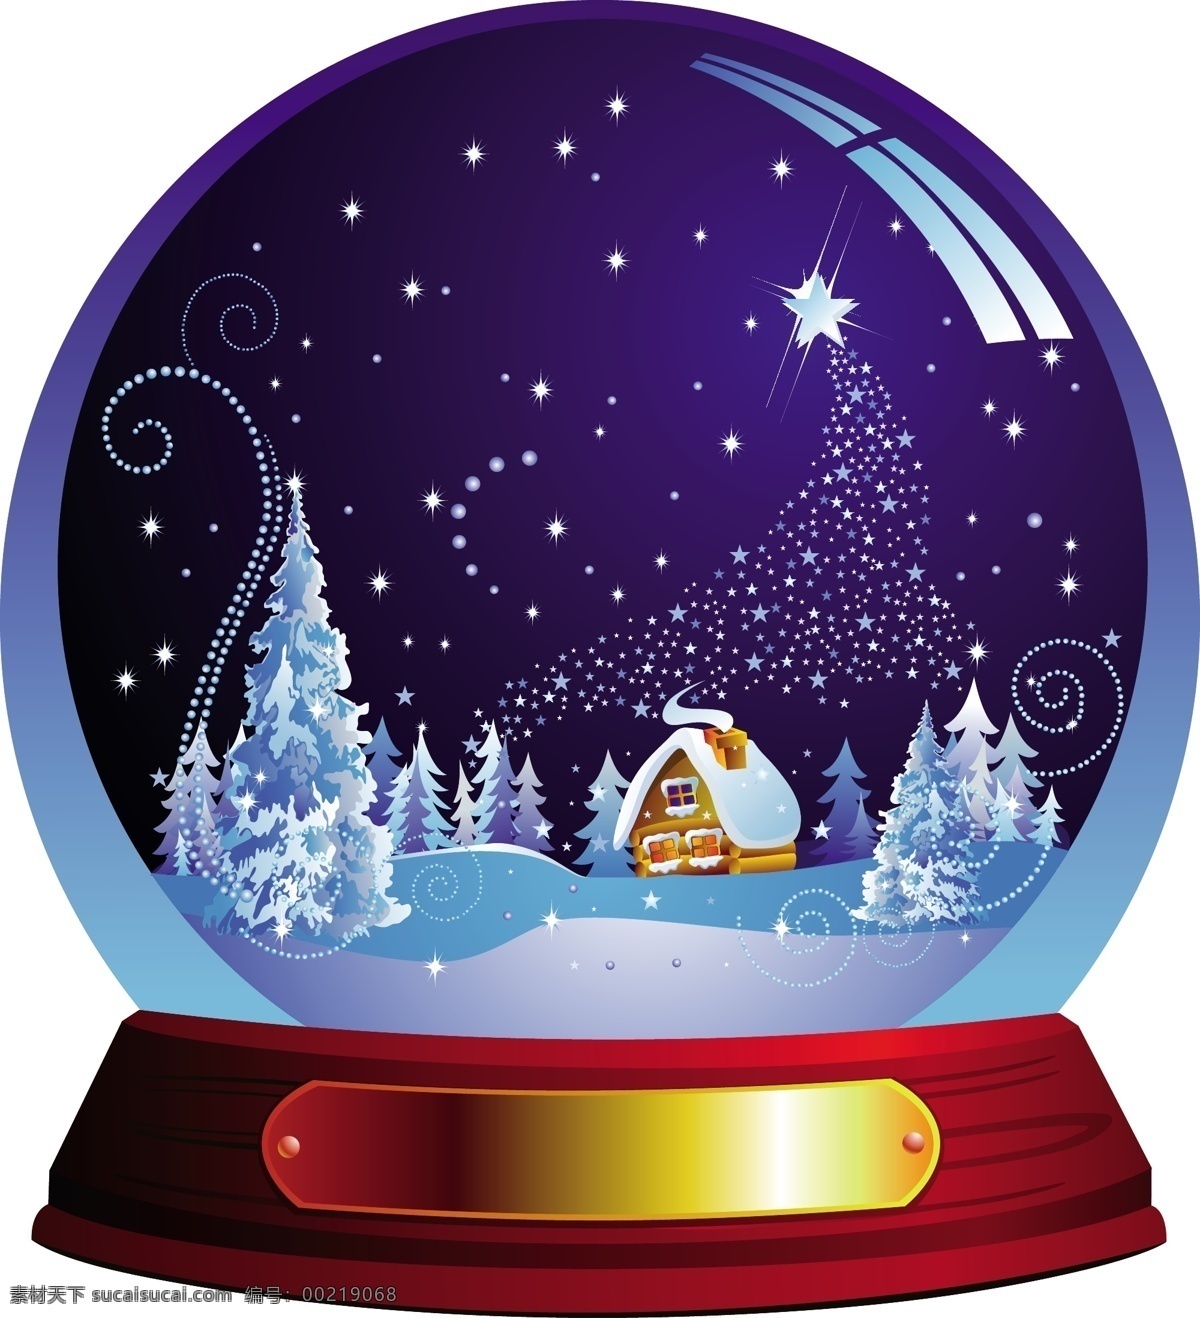 圣诞 水晶球 销售 吊牌 矢量 flash 标签 玻璃球 城堡 房子 购买 圣诞树 星光 雪 烟花 矢量图 其他节日